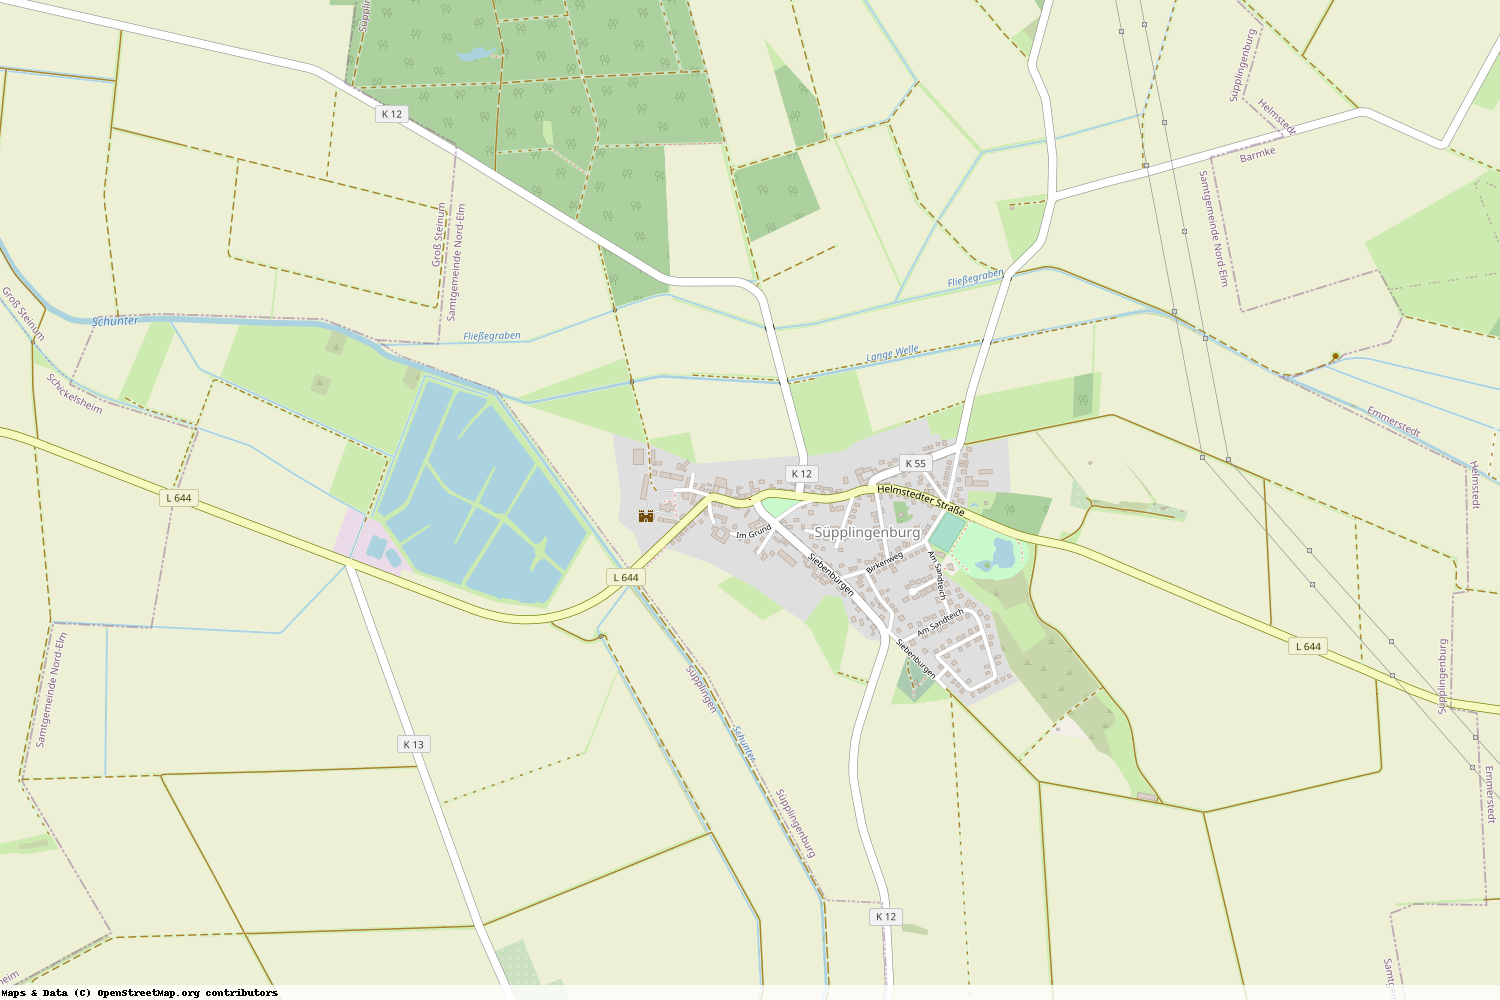 Ist gerade Stromausfall in Niedersachsen - Helmstedt - Süpplingenburg?